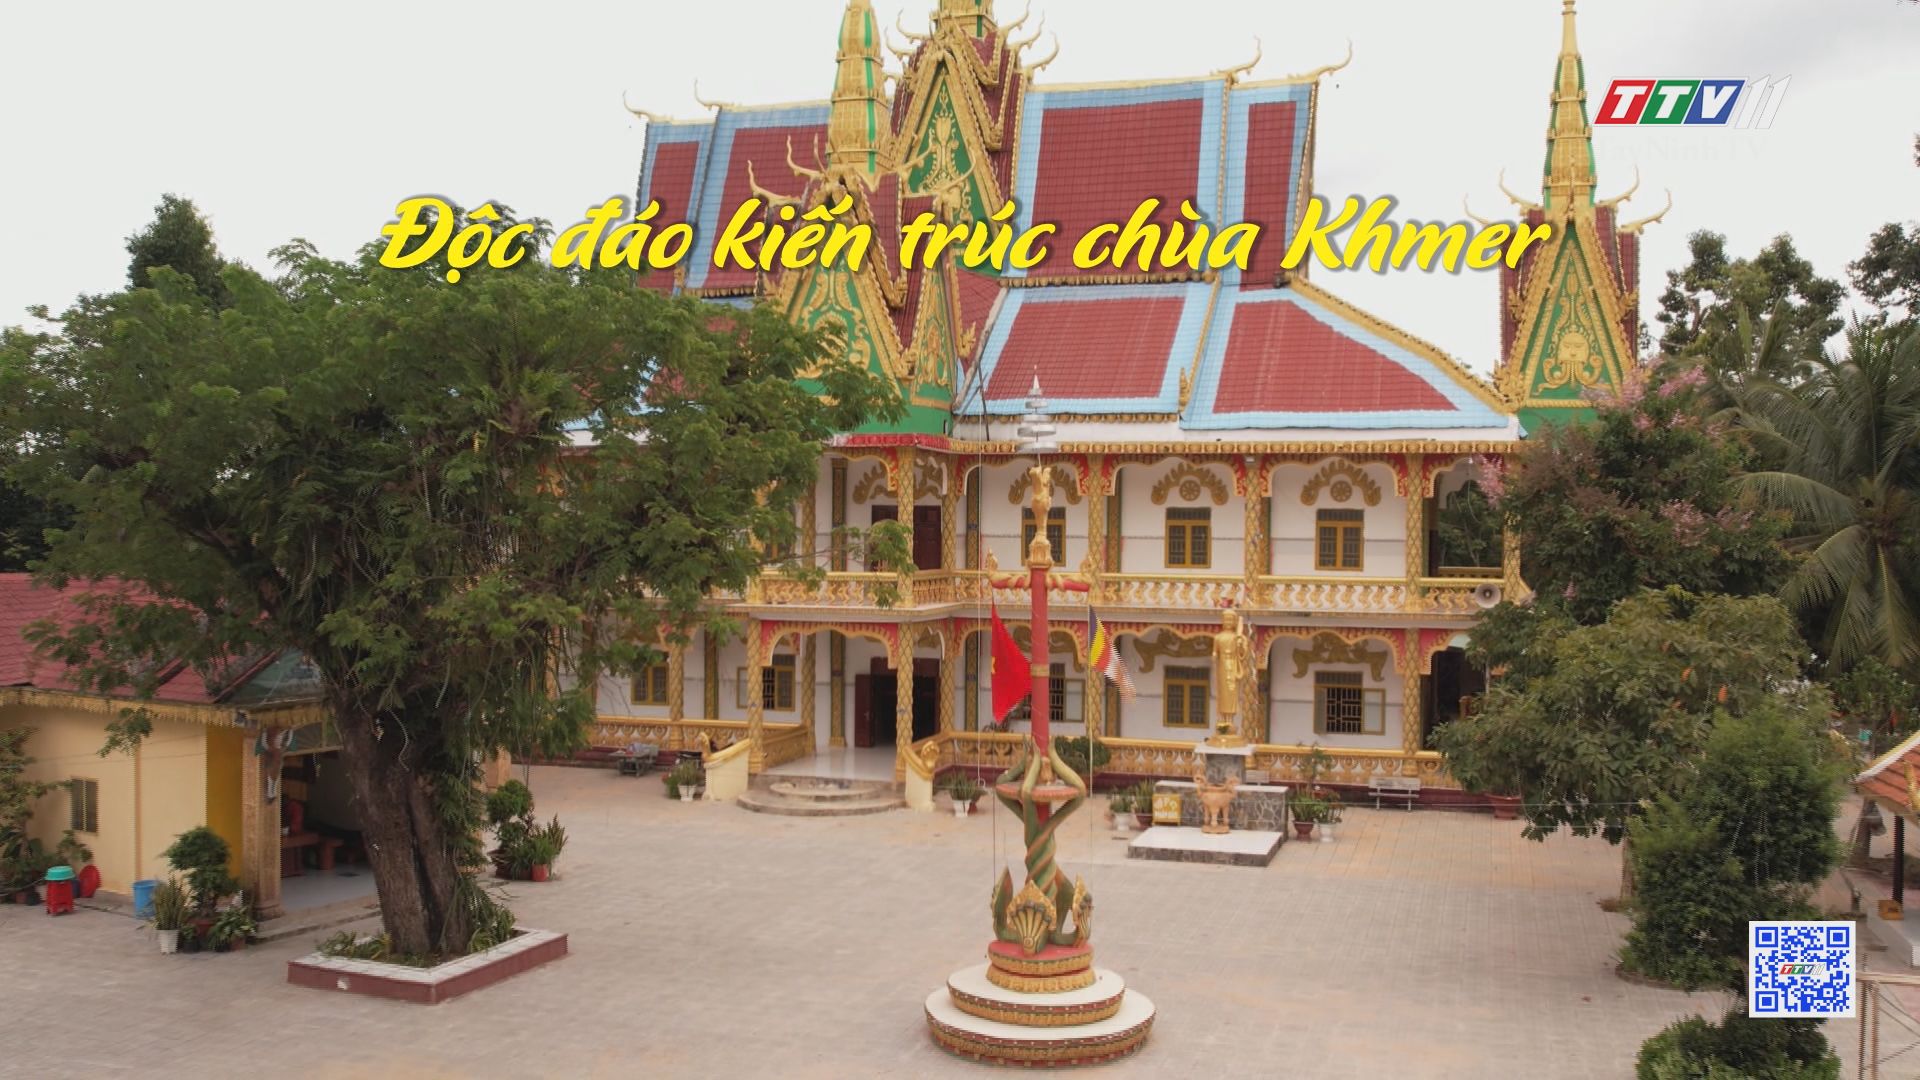 Độc đáo kiến trúc chùa Khmer | PHÁT TRIỂN VÙNG ĐỒNG BÀO DÂN TỘC THIỂU SỐ | TayNinhTV